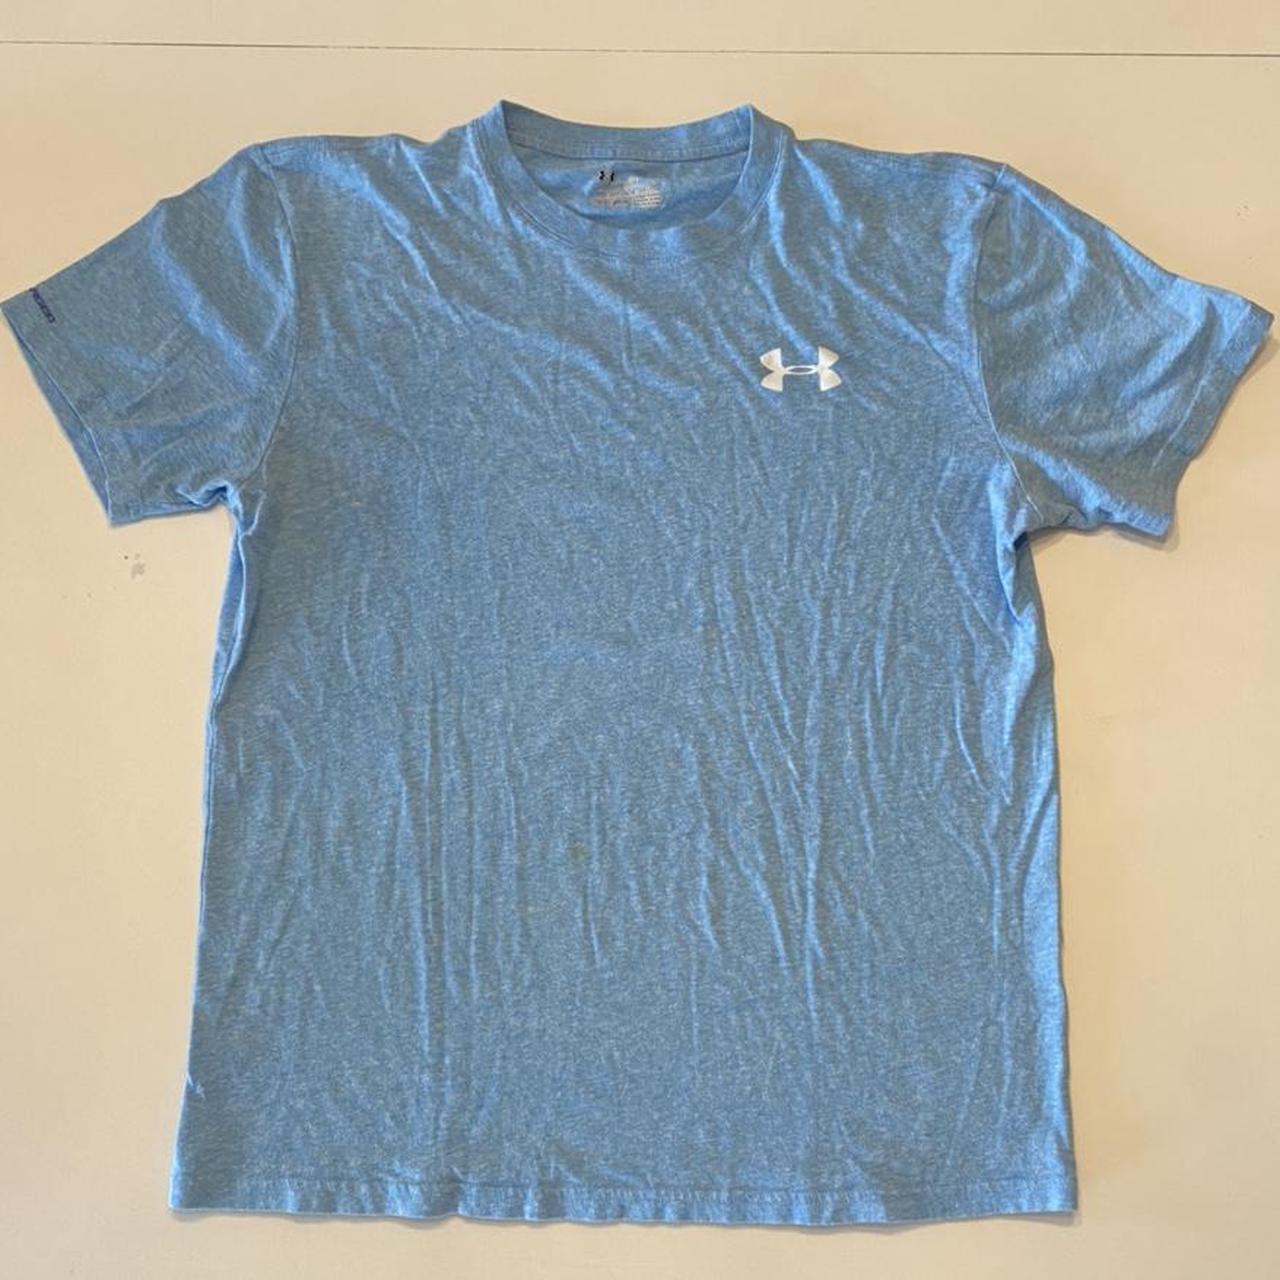 Men’s Light Blue Under Armour T-Shirt Brand: Under... - Depop